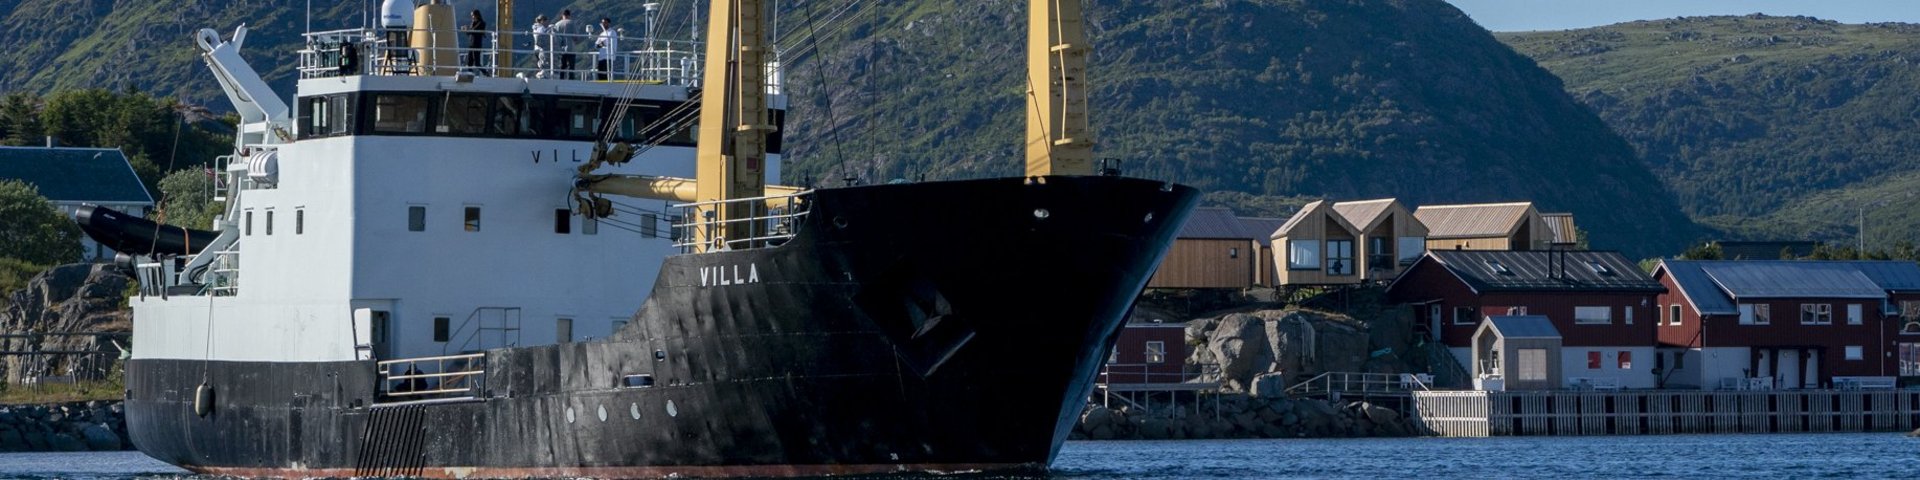 Expeditionsschiff Villa in Norwegen